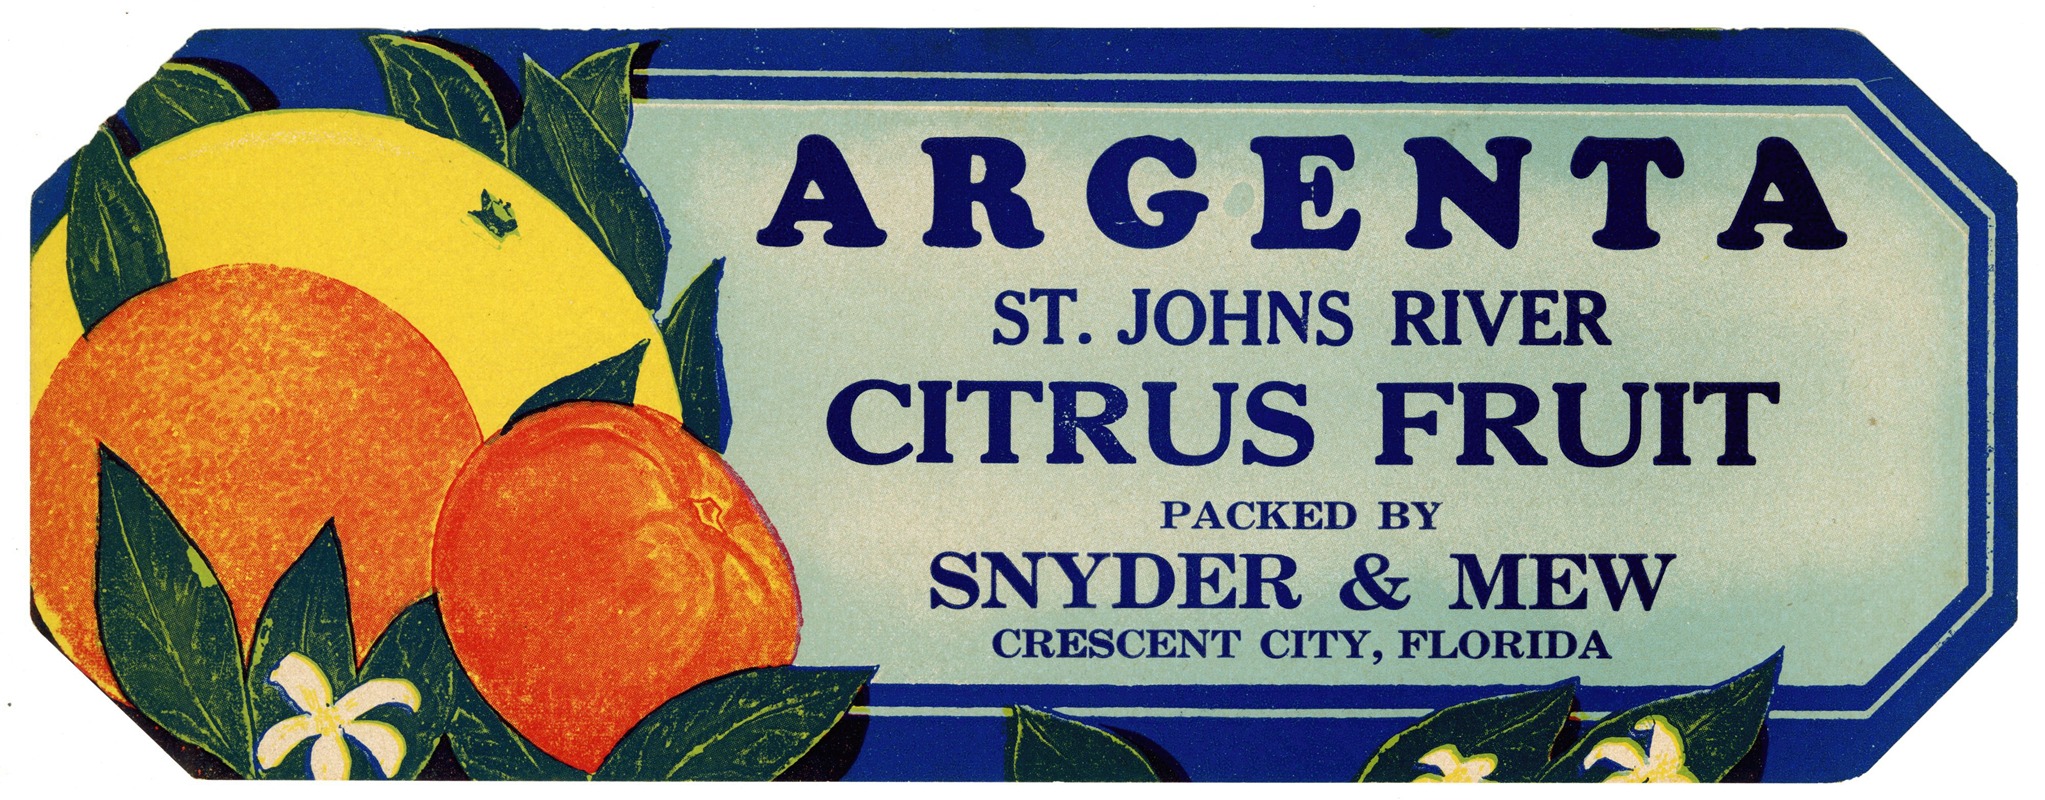 Anonymous - Argenta Citrus Fruit Label